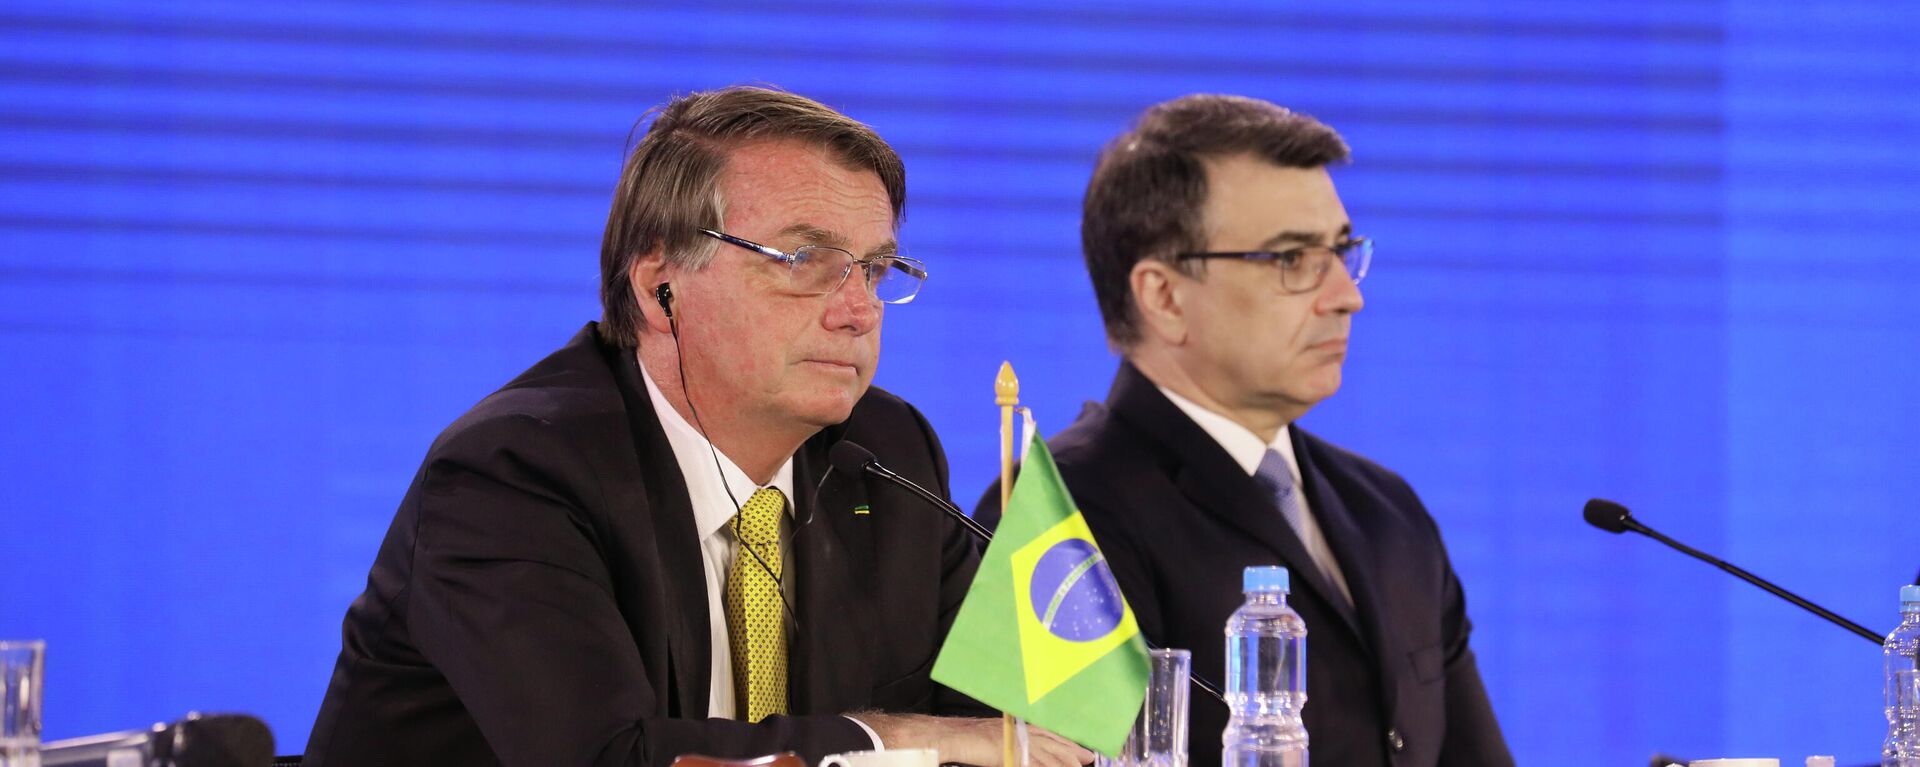 Presidente brasileiro, Jair Bolsonaro (à esquerda), e ministro das Relações Exteriores do Brasil, Carlos França, na LIX Cúpula de Chefes de Estado do Mercosul e Estados Associados, em 17 de dezembro de 2021 - Sputnik Brasil, 1920, 26.01.2022